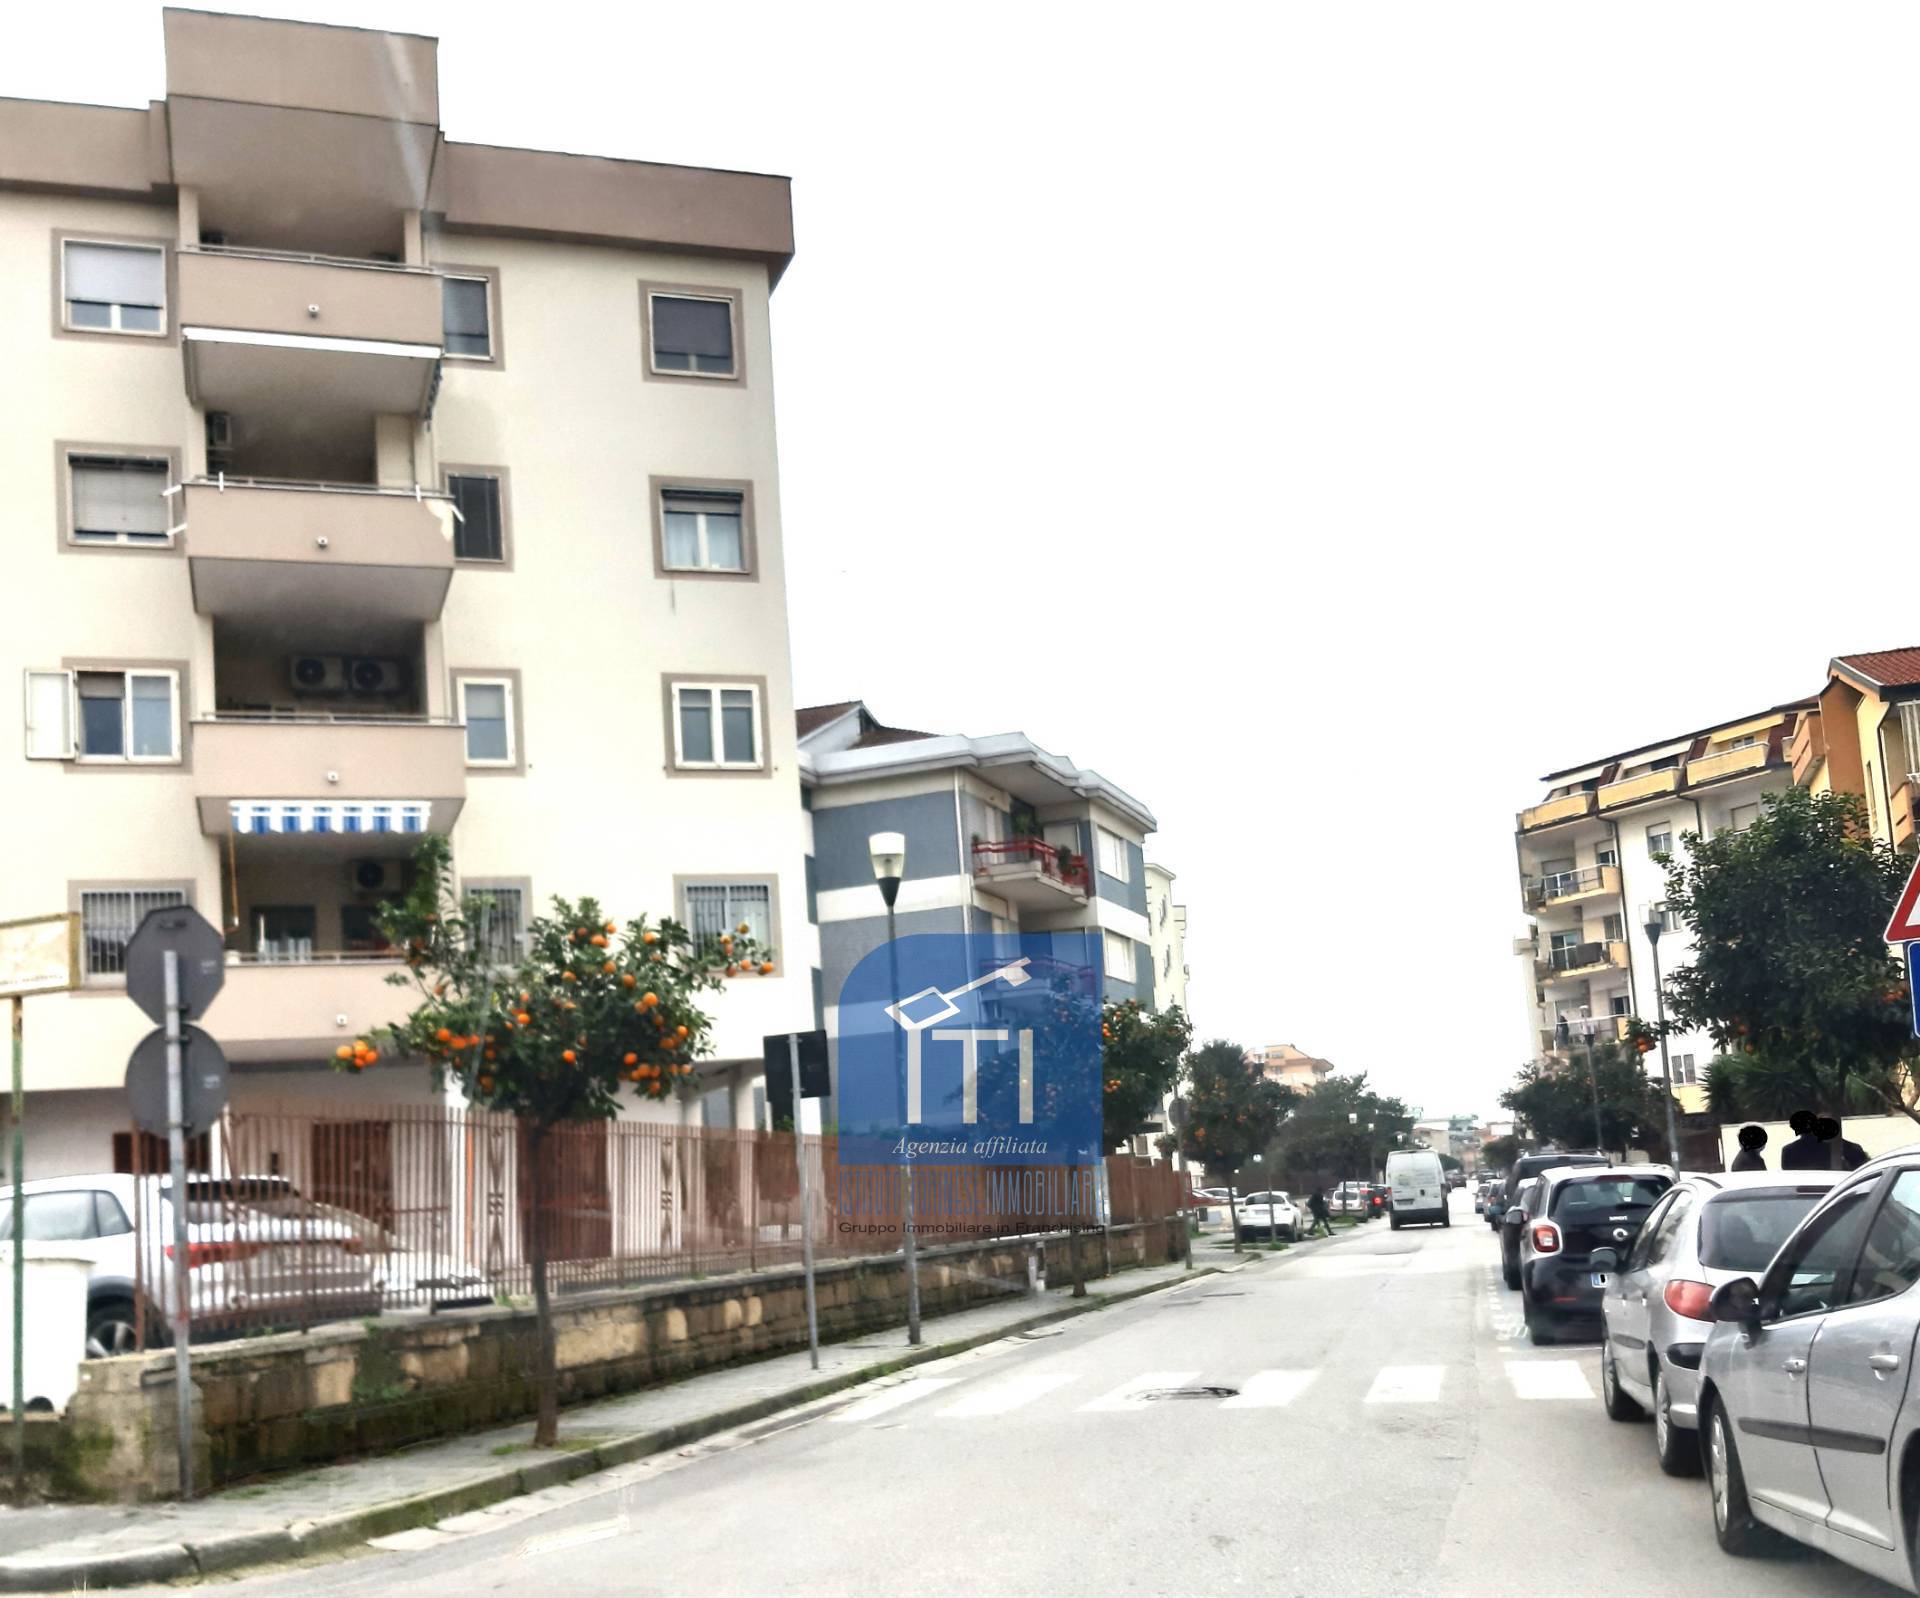 Appartamento in affitto a Aversa, 6 locali, zona Località: Centro, prezzo € 600 | CambioCasa.it